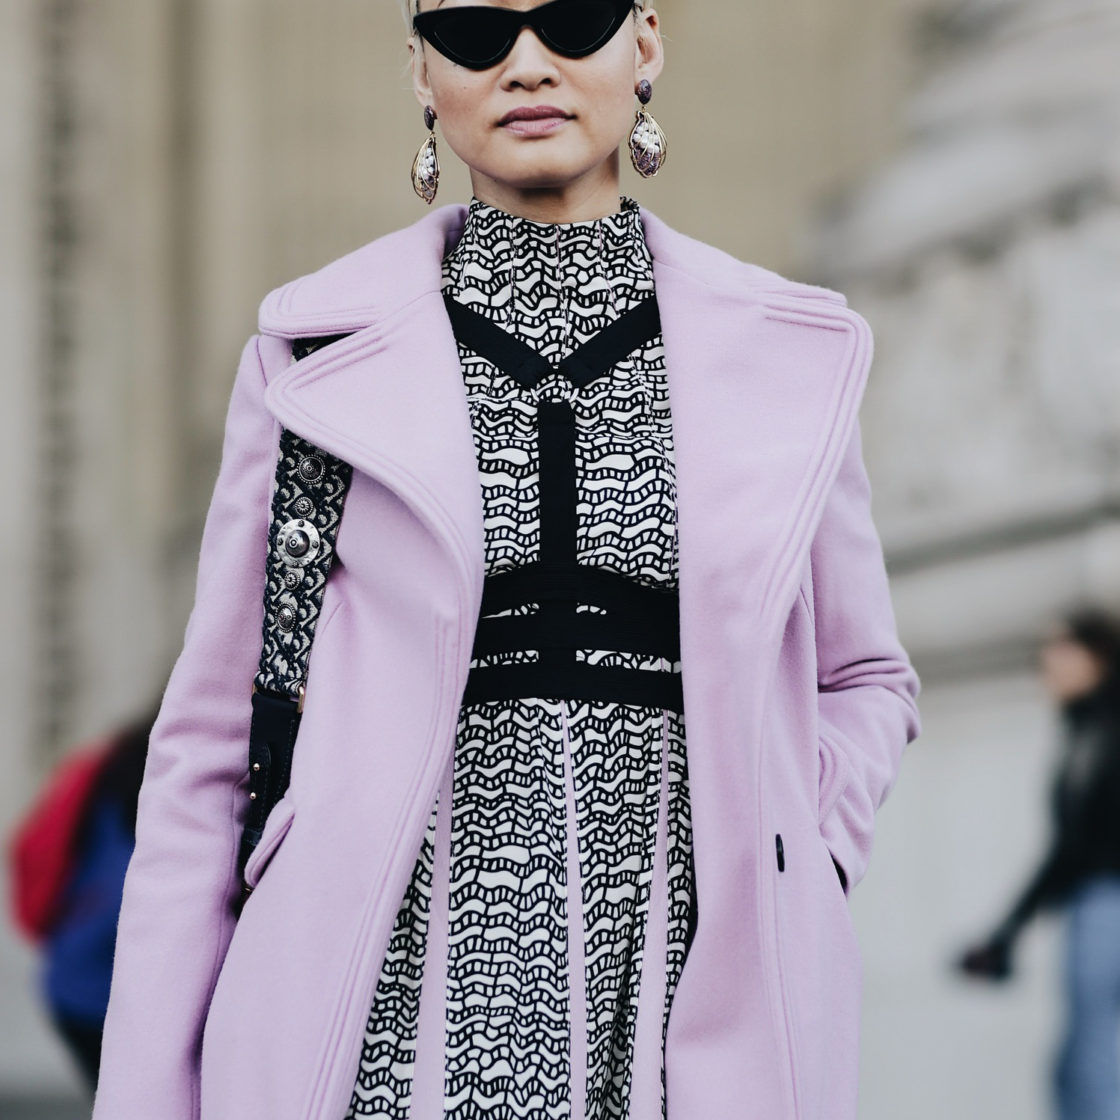 Street Style during Paris Fashion Week: Esther Quake